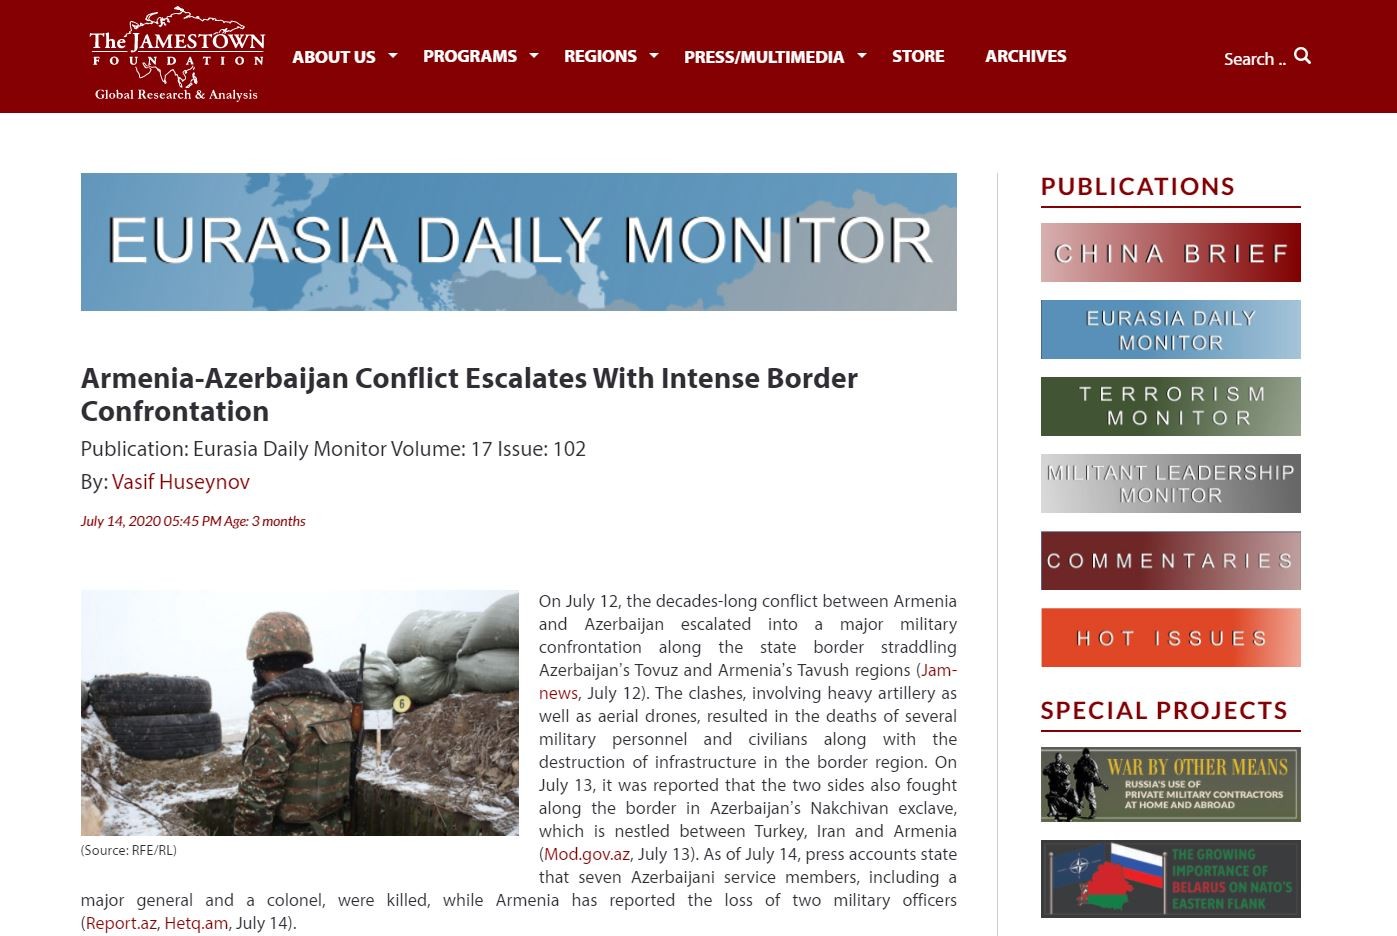 “Armenia – Azerbaijan Conflict Escalates with Intense Border Confrontation